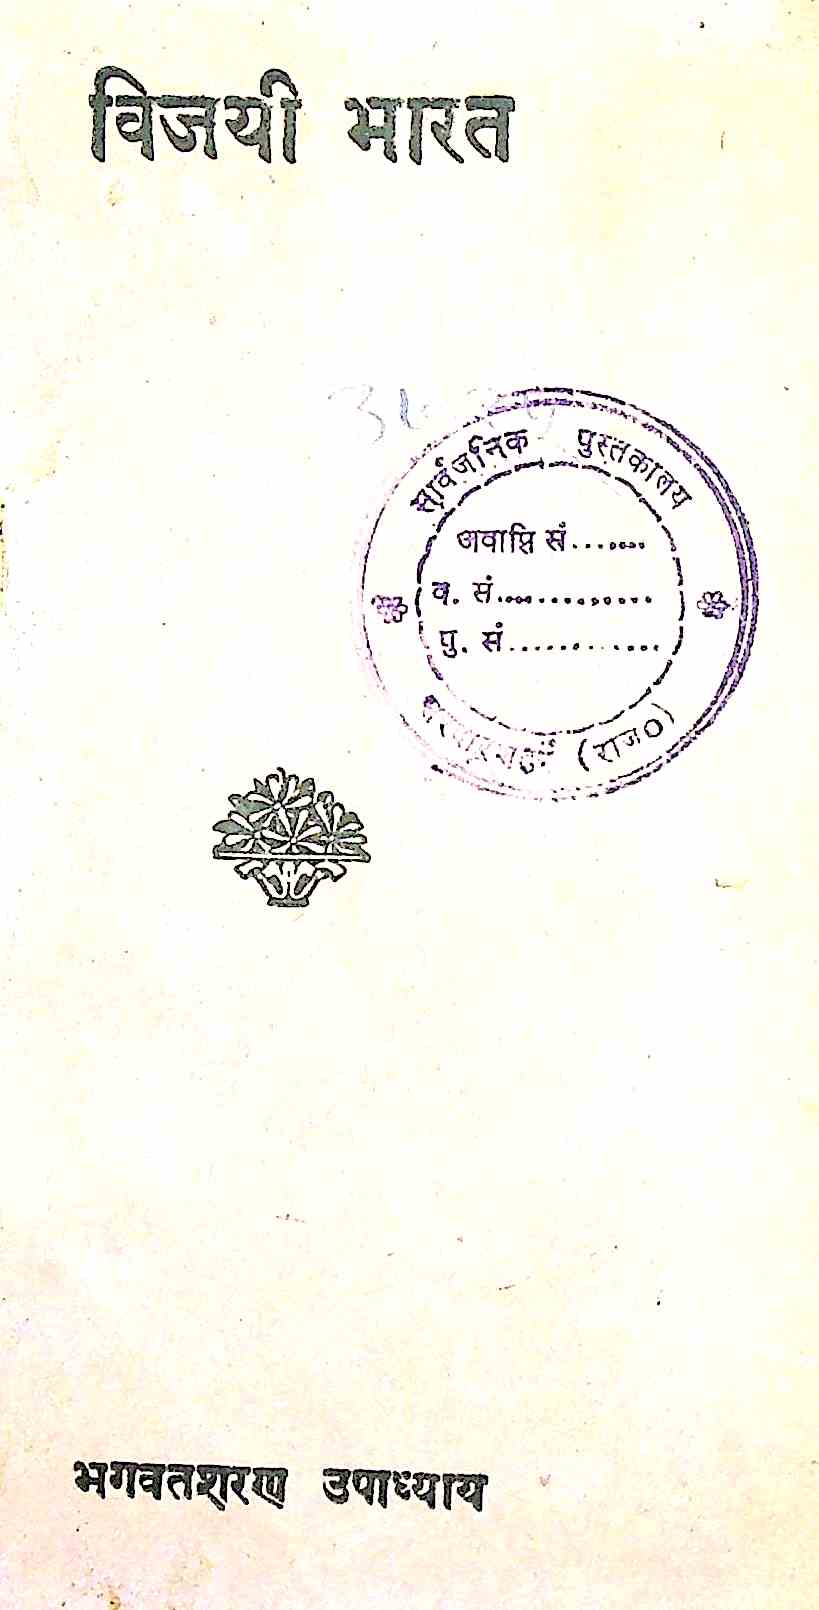 Vijayi Bharat